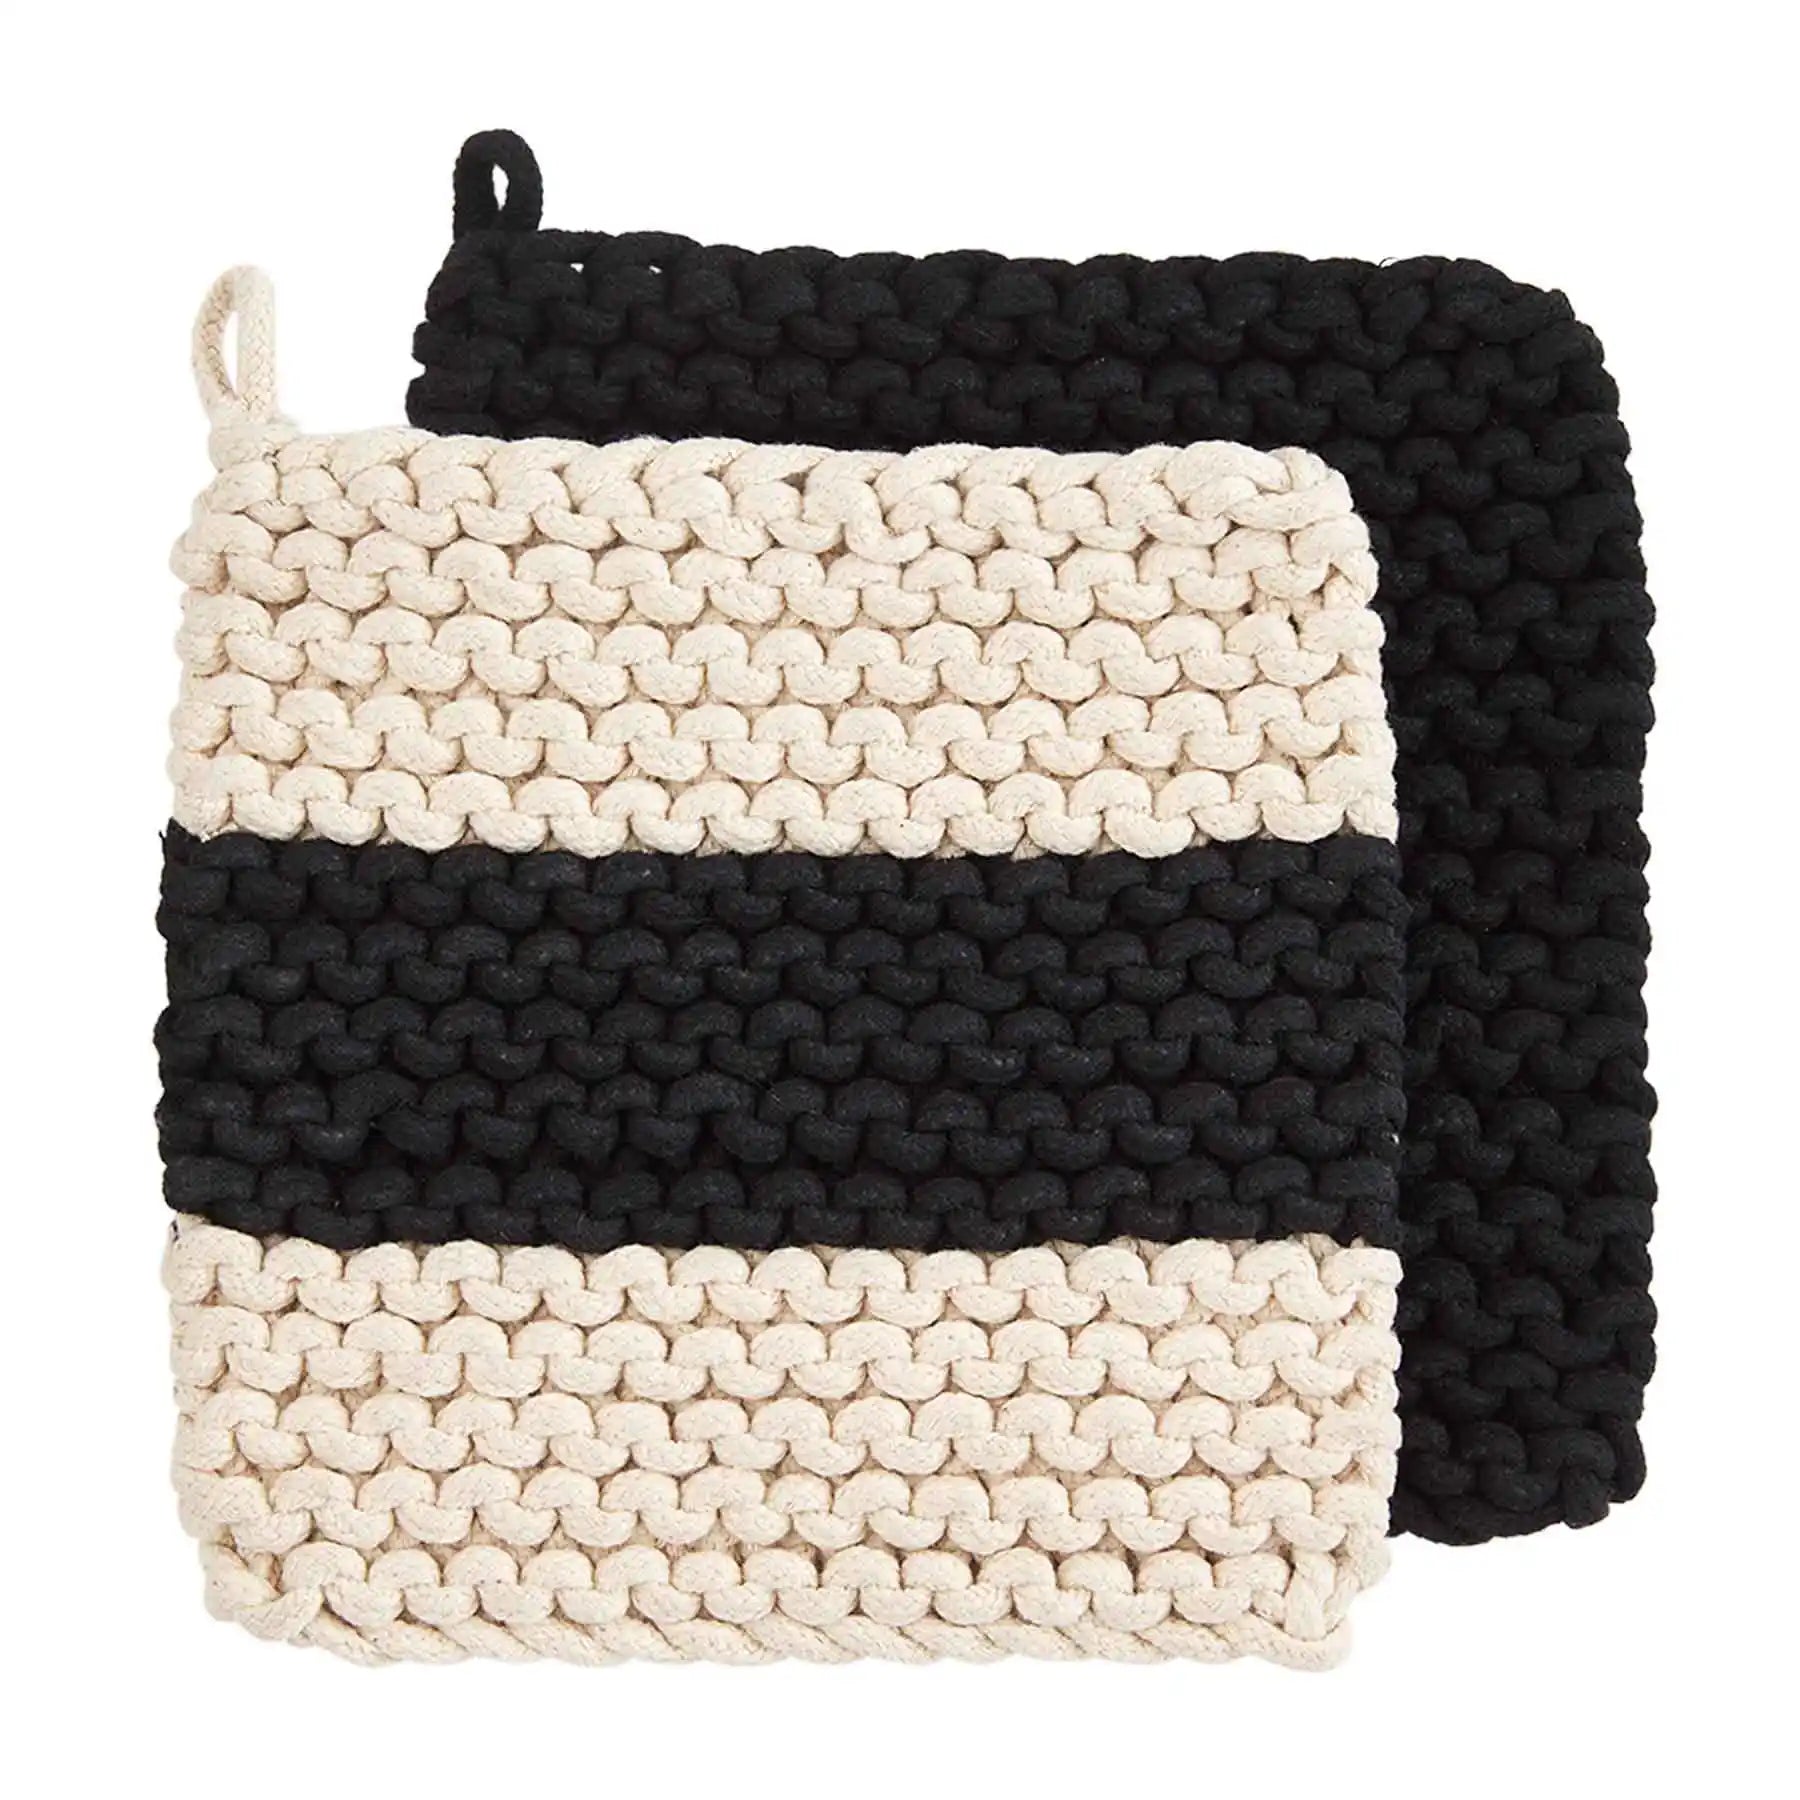 One Stripe Crochet Holder Set